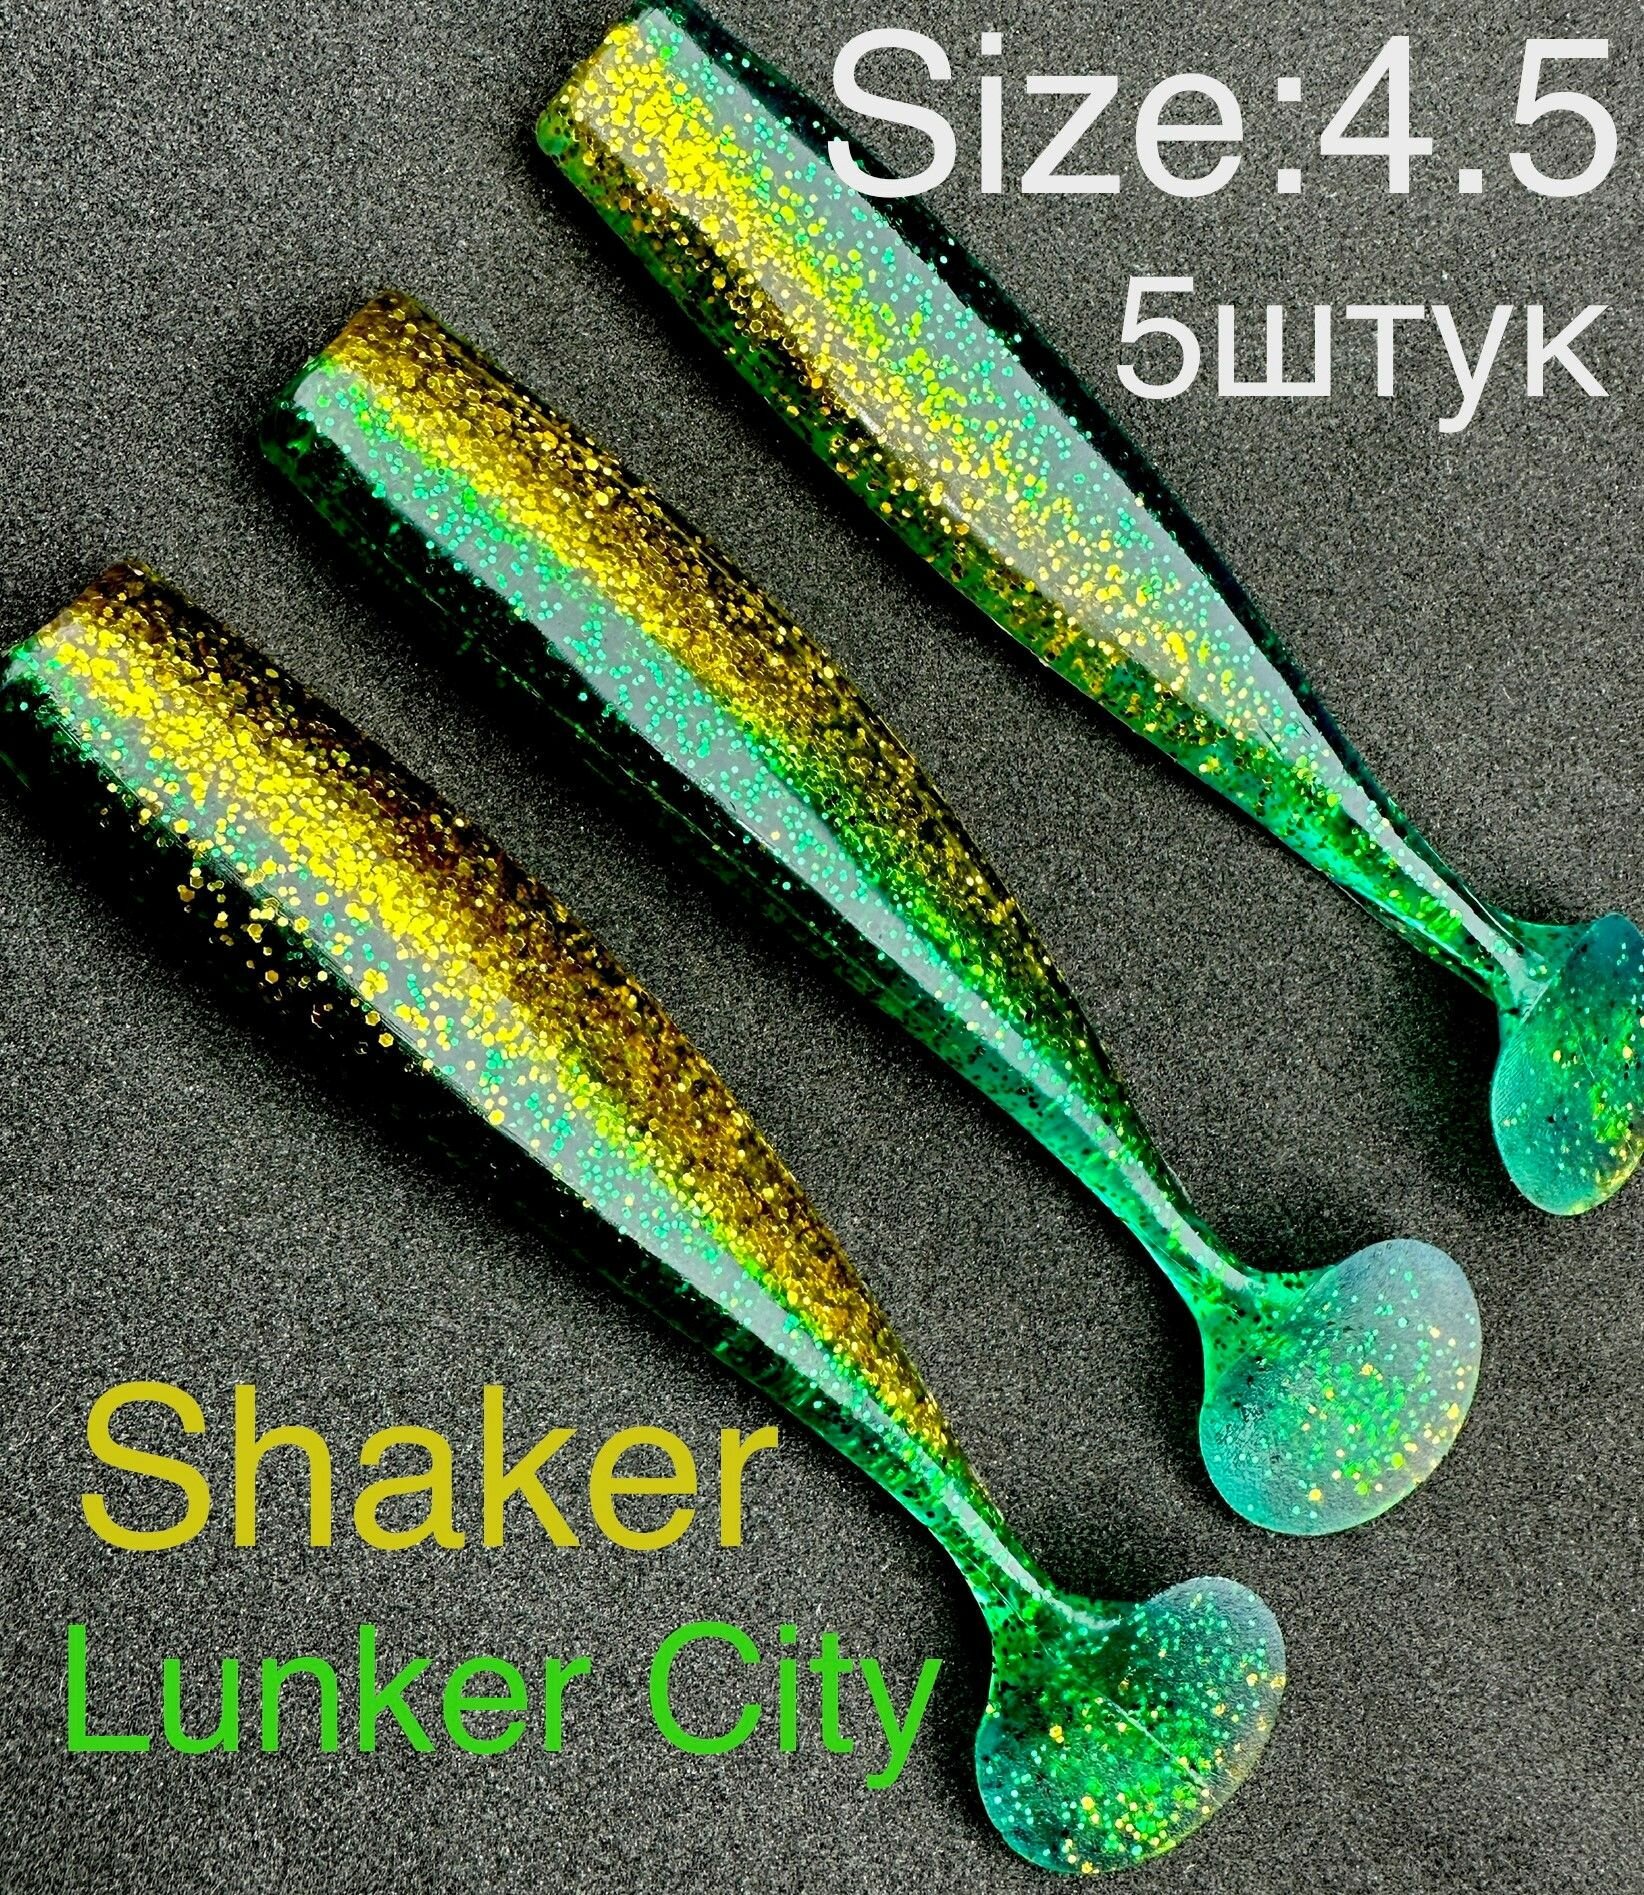 Мягкие приманки Lunker CITY Shaker США виброхвост для джига на щуку, окуня, судака, берш, язь, форель